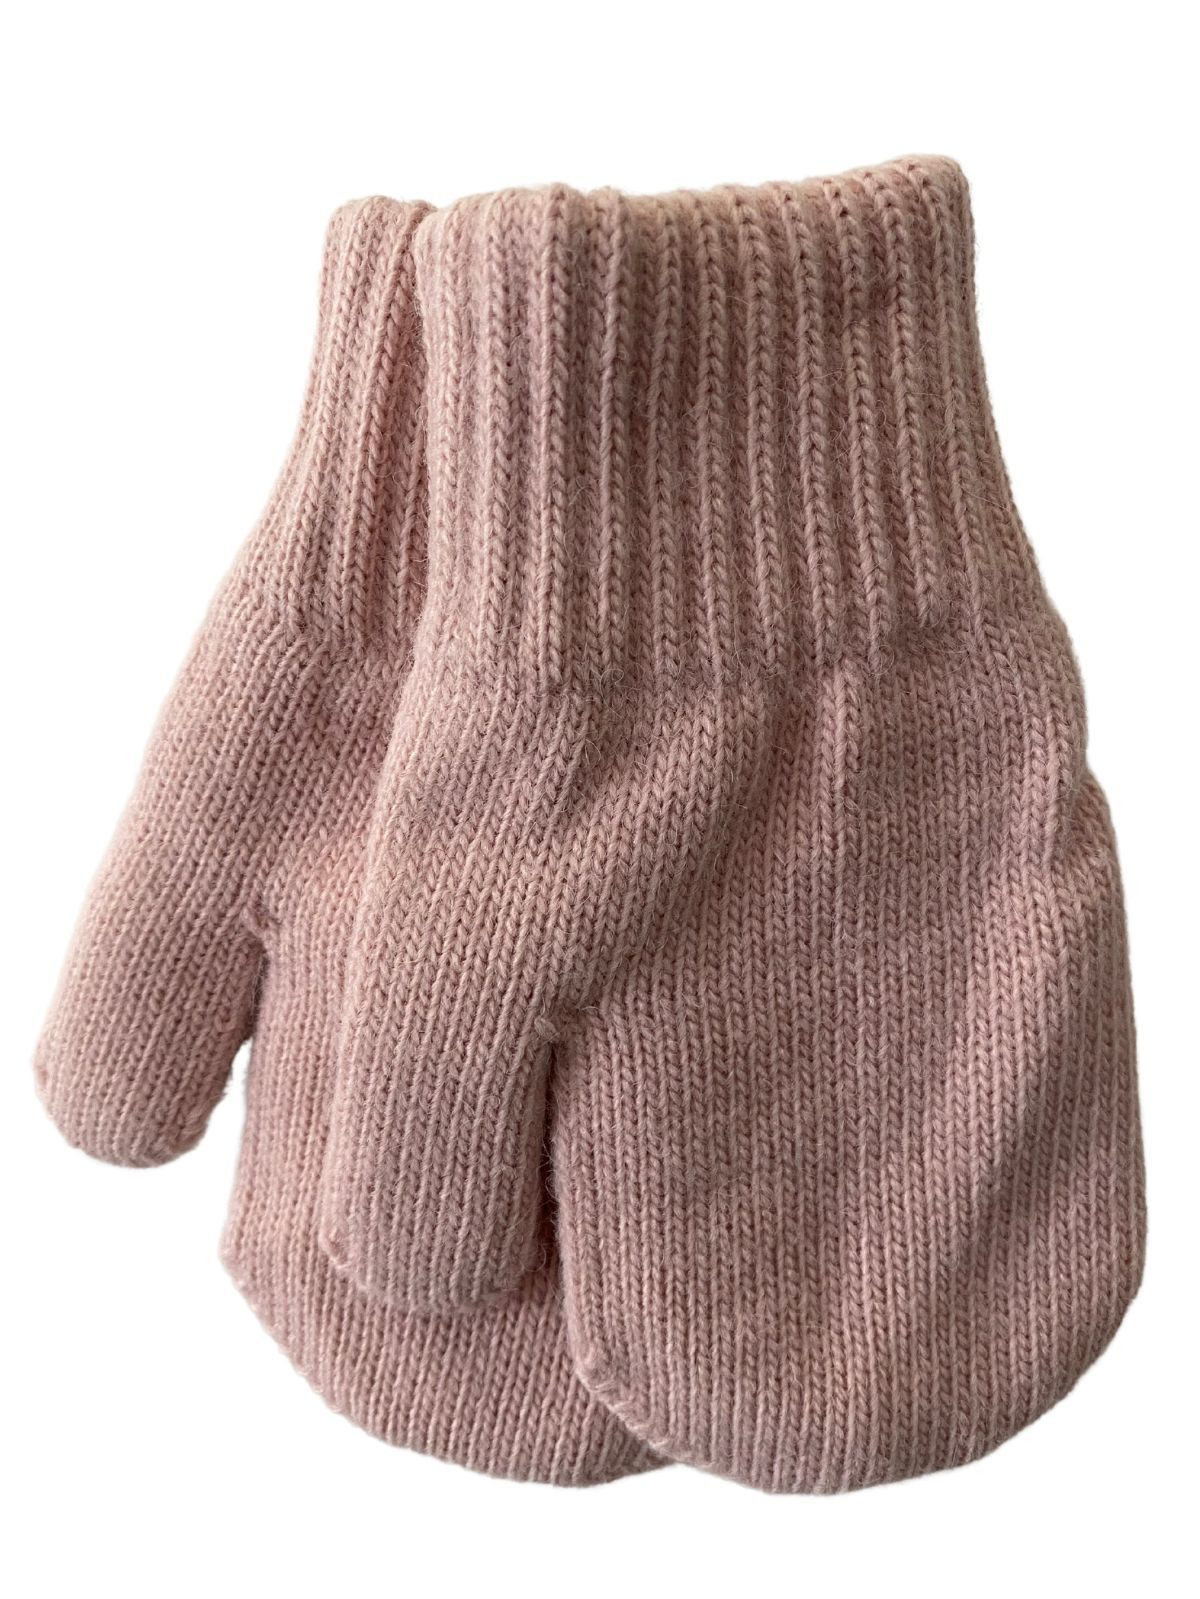 Mitaines tricotés pour enfant 3-5 ans, Basic35_rose